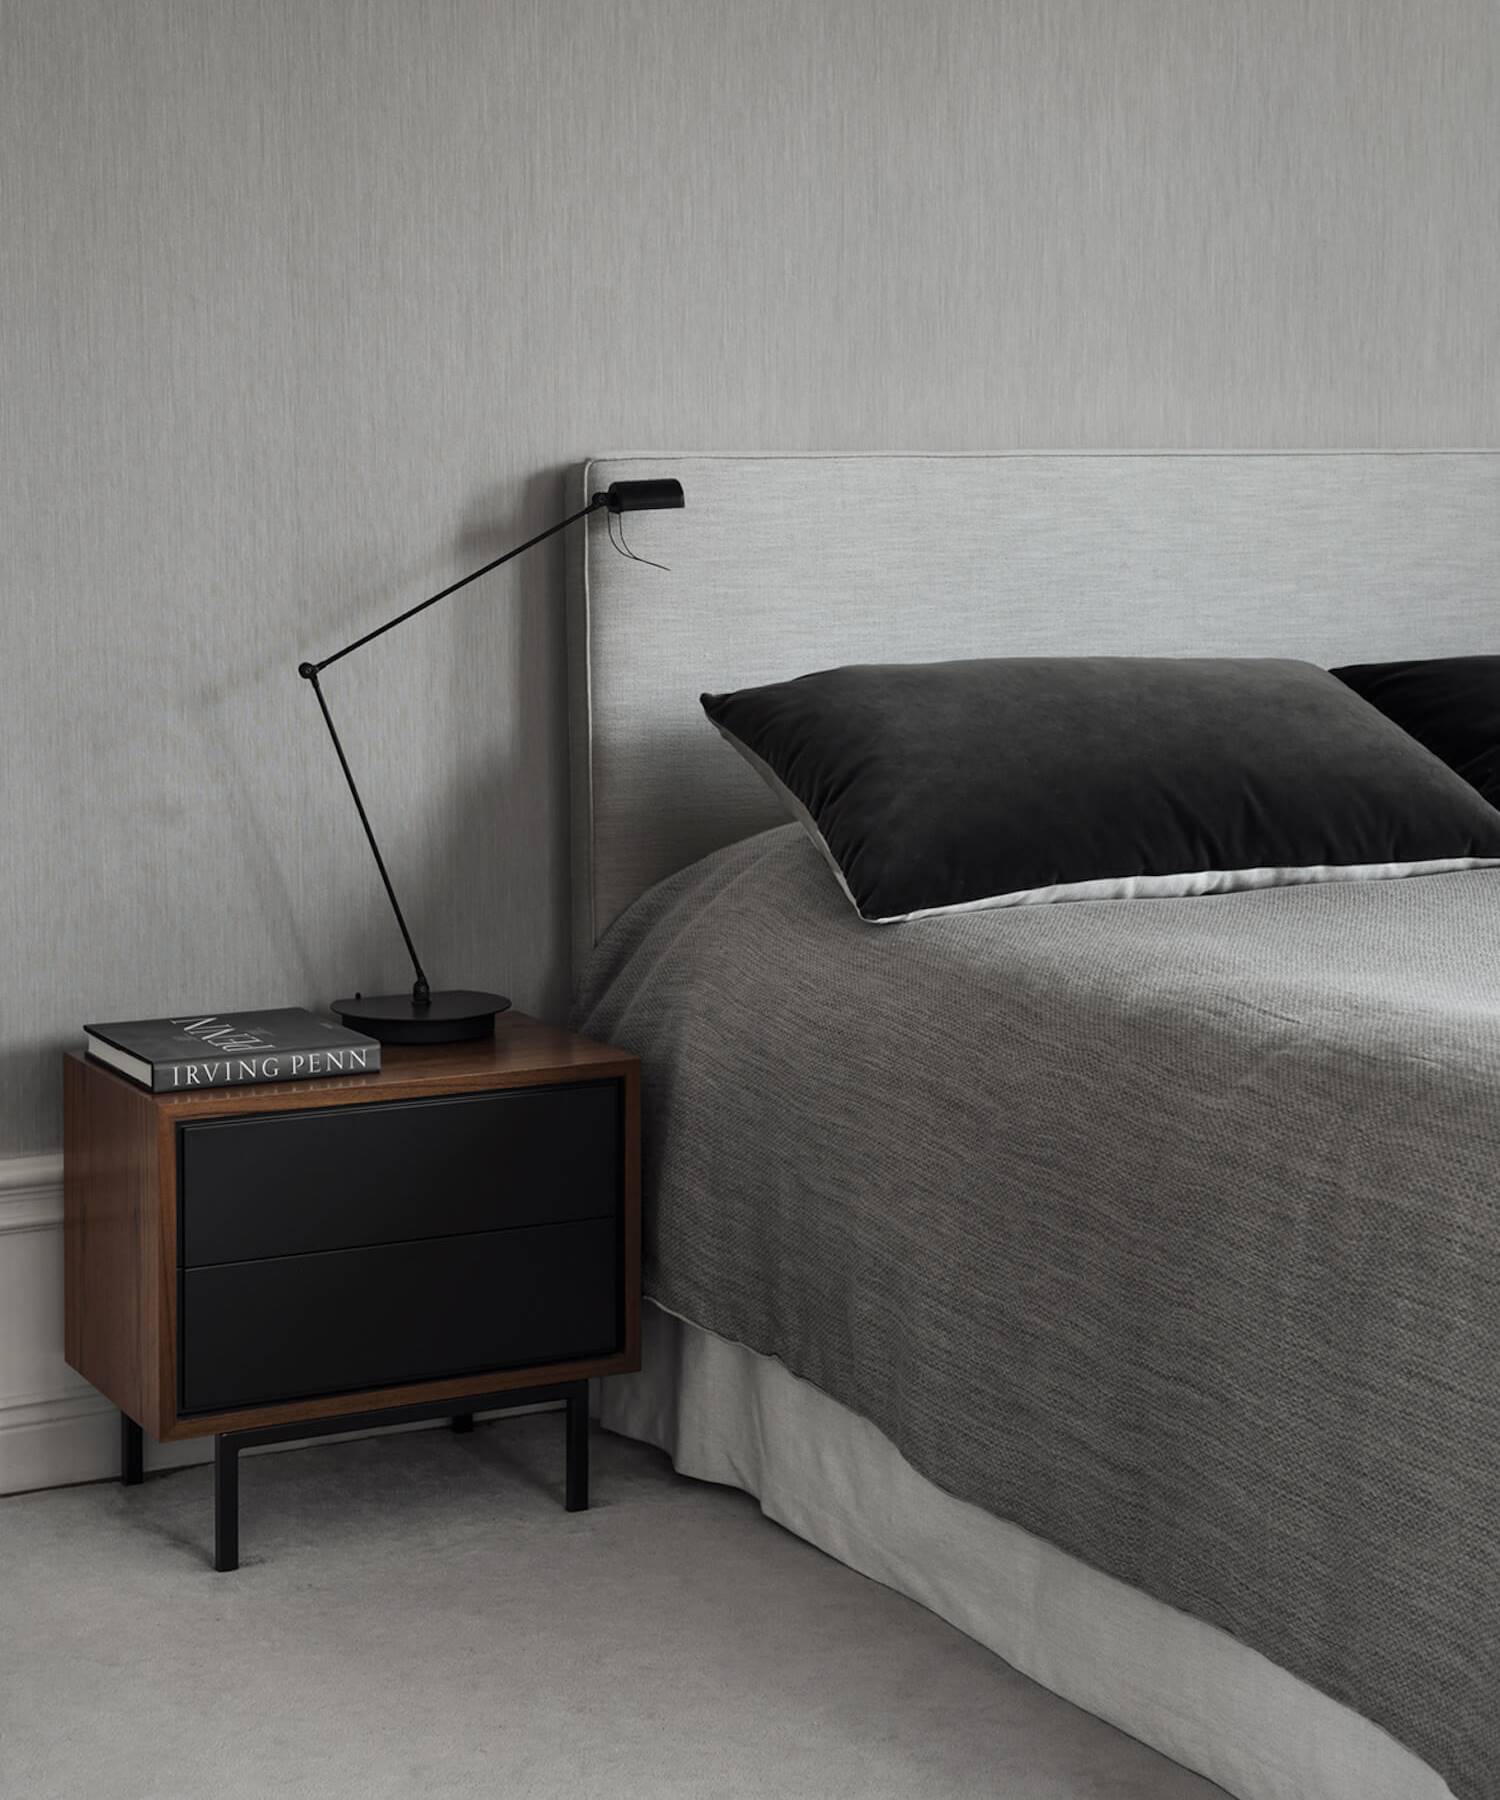 Detalle de un dormitorio en tono gris perla, mesilla de madera y luminaria metálica en negro